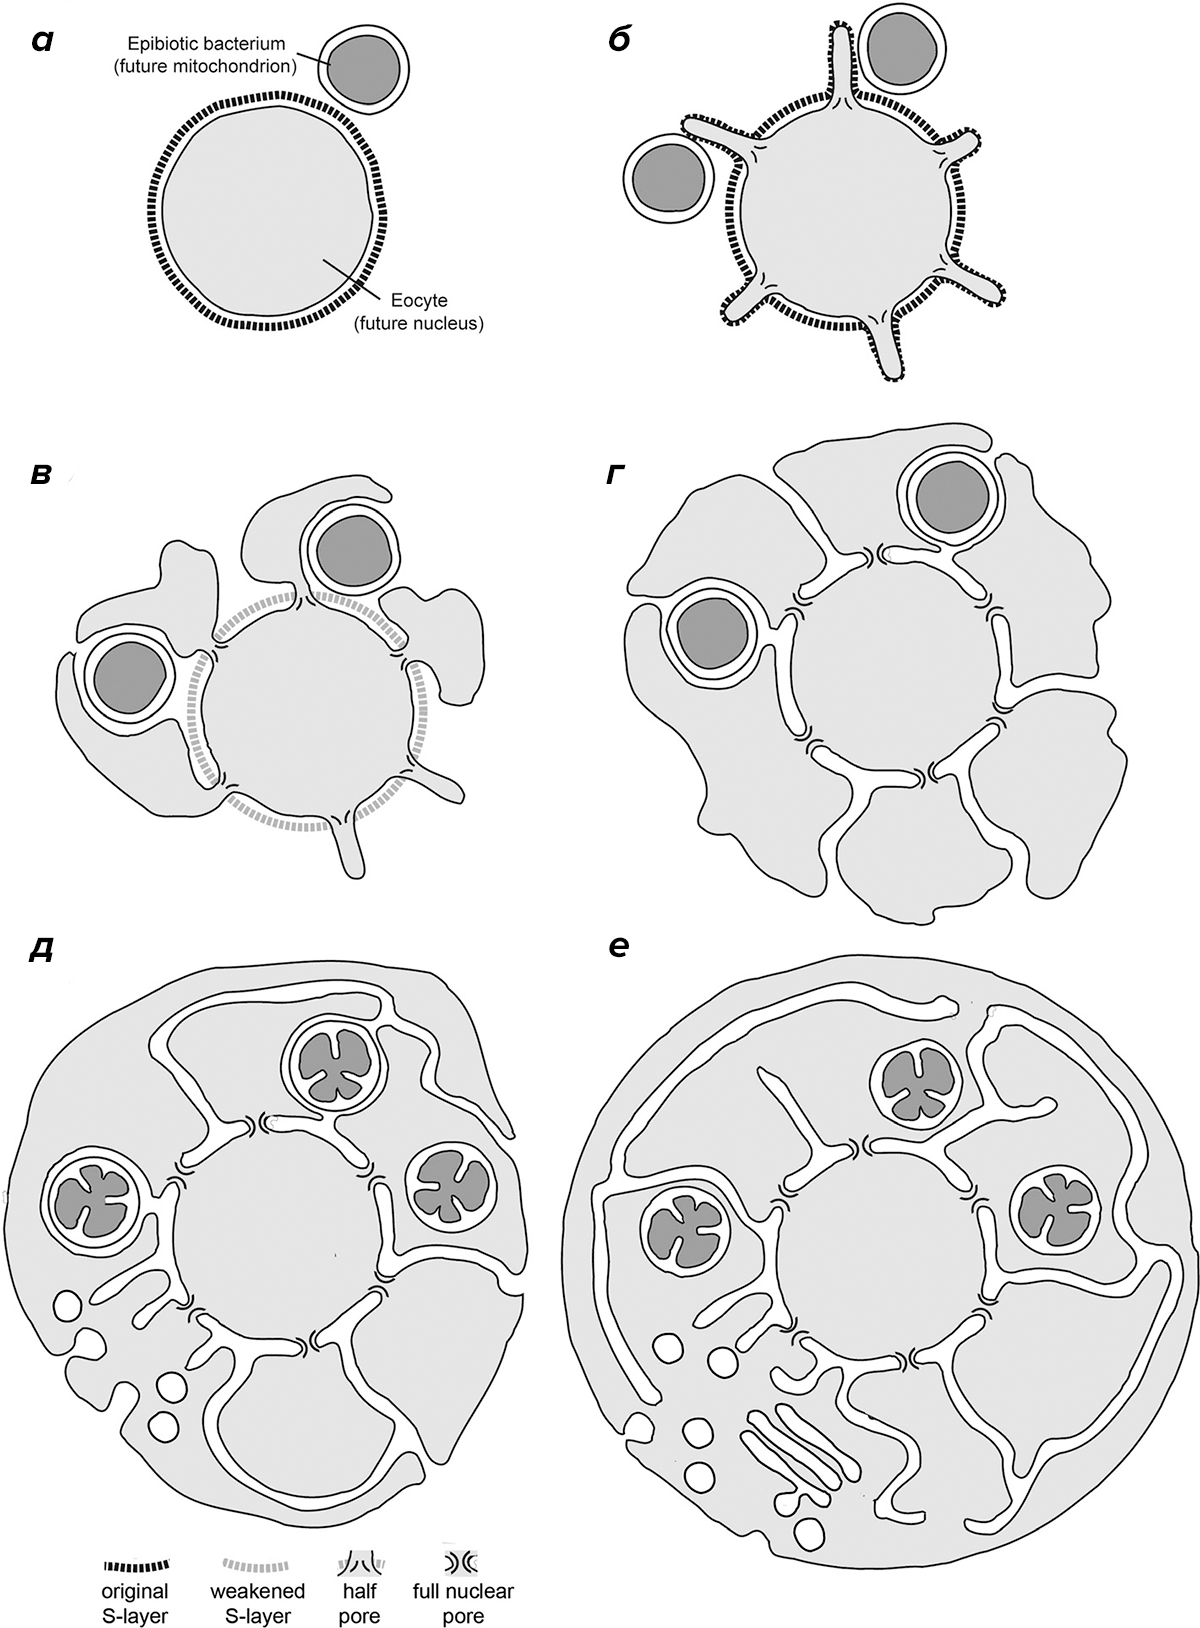 Последовательные этапы эволюции первого общего предка эукариот